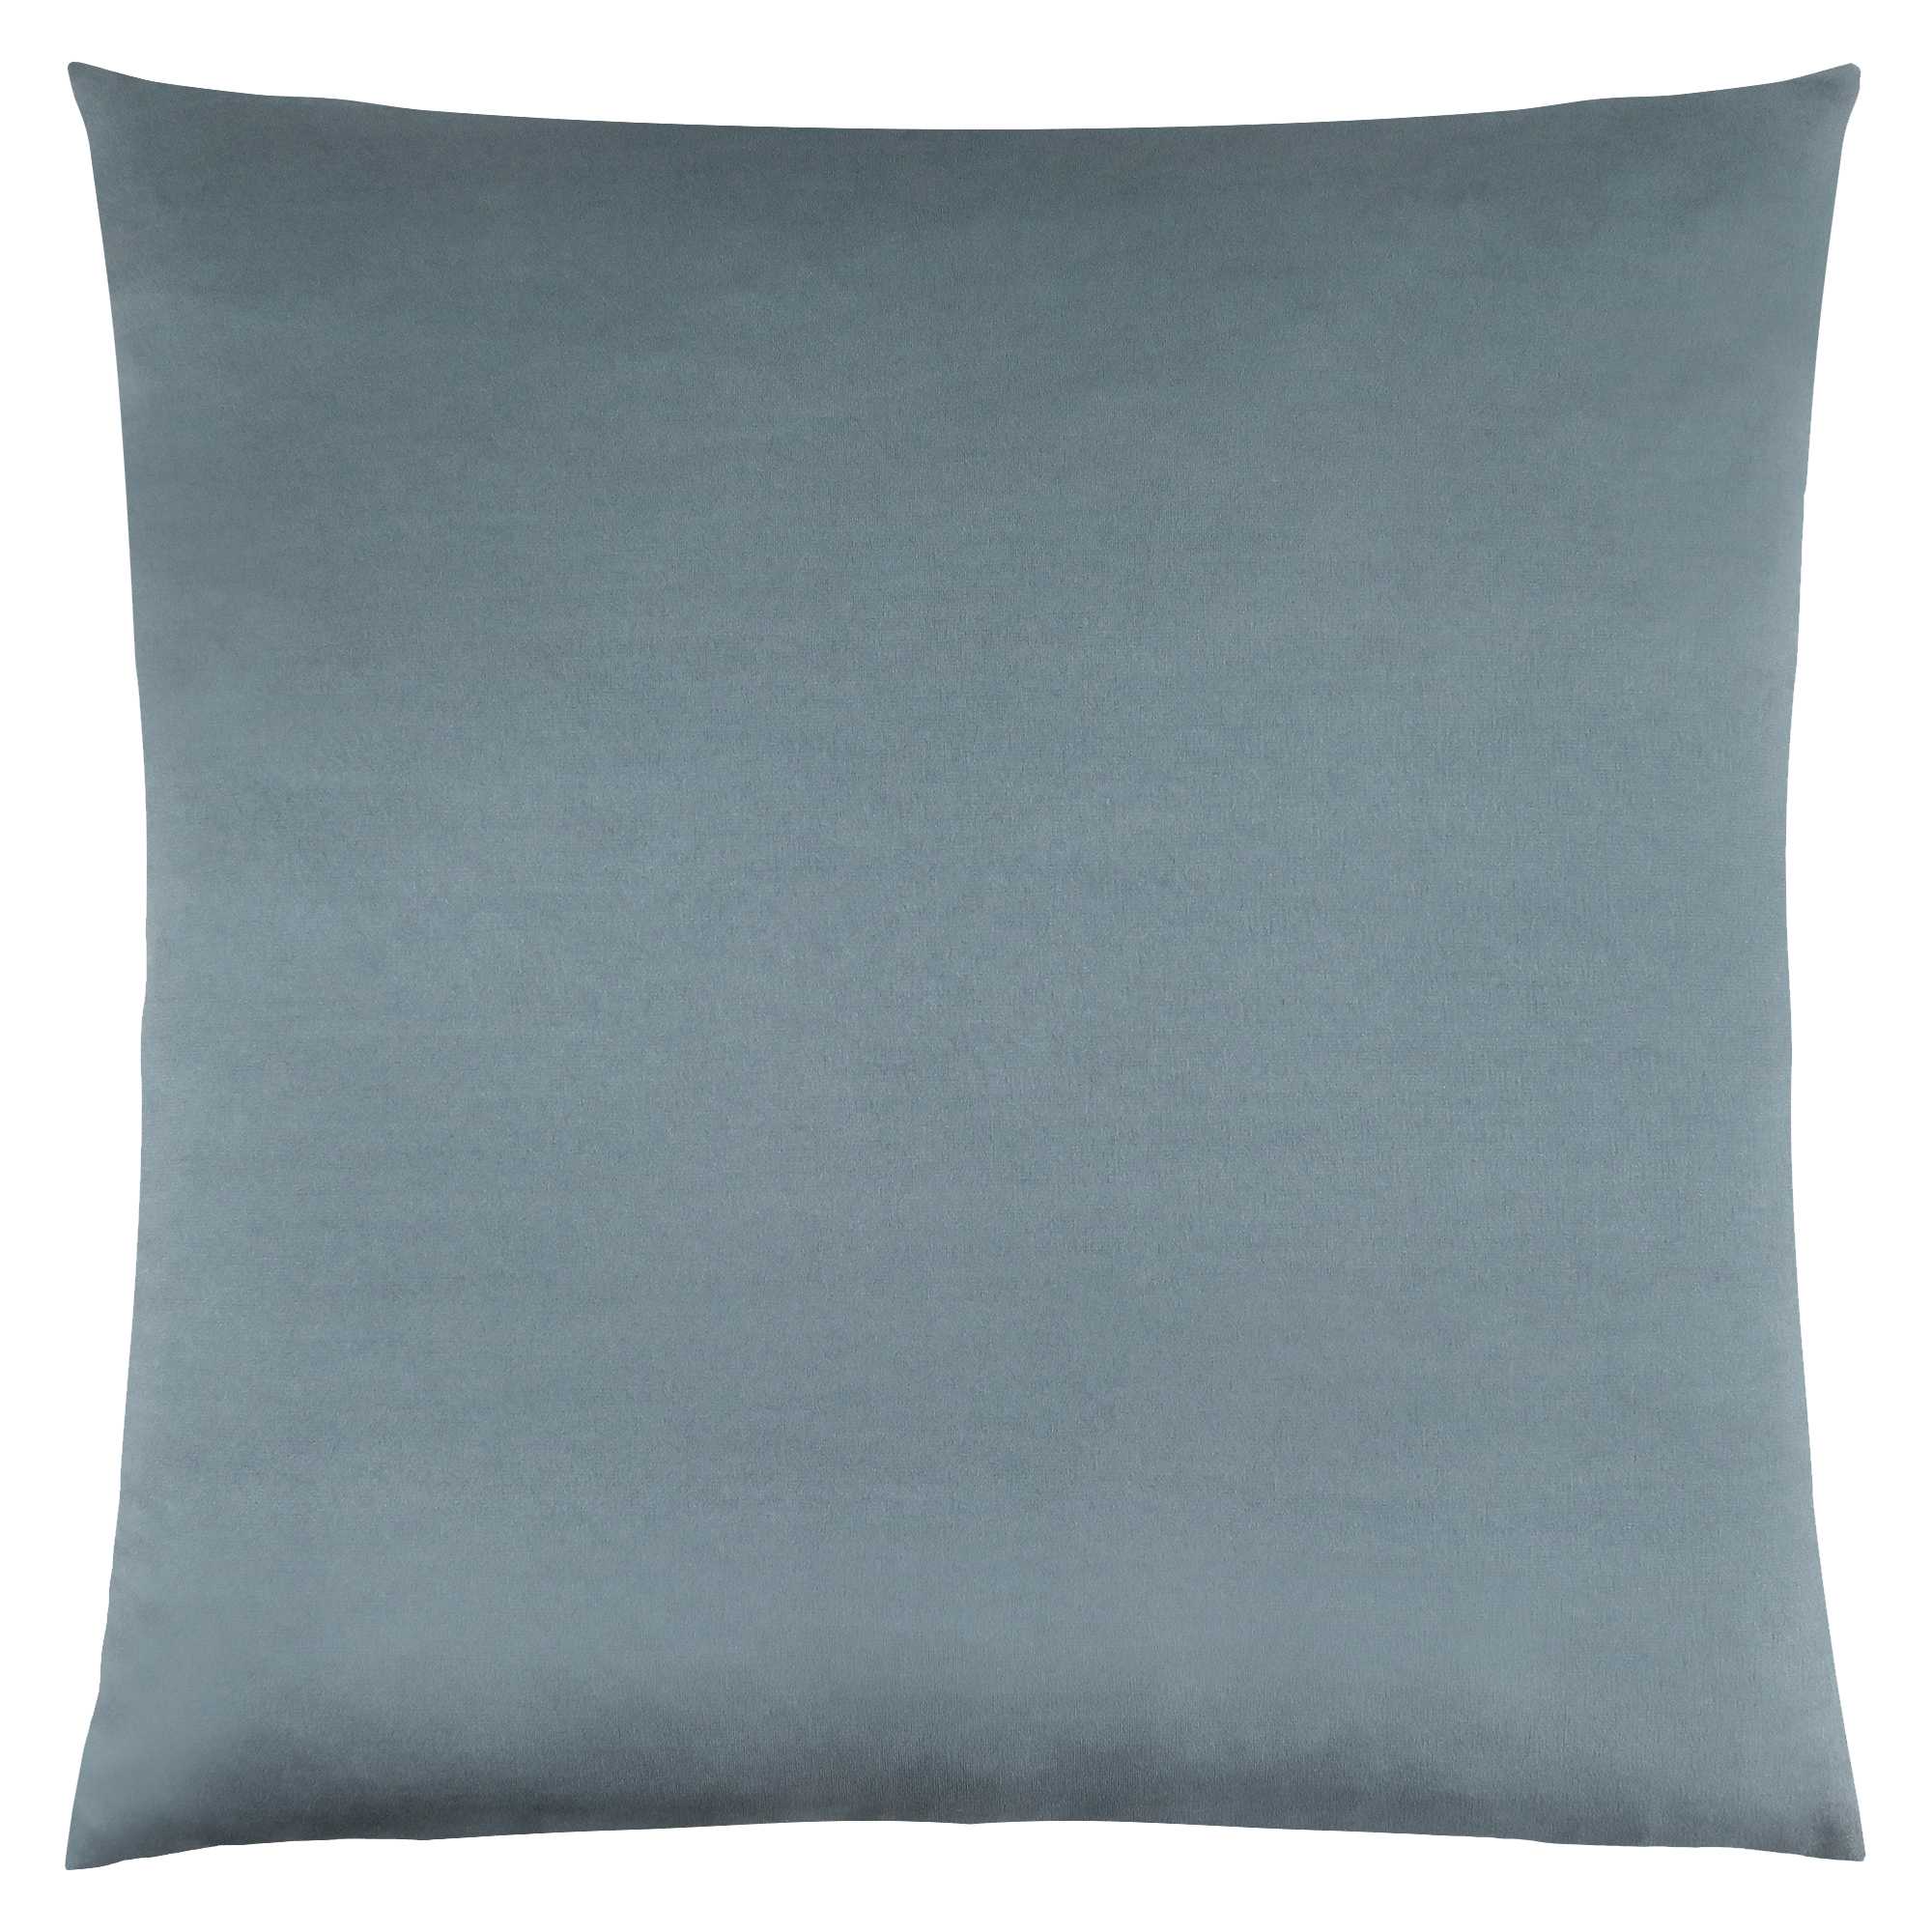 18" X 18" Blue Polyester Zippered Pillow-344081-1